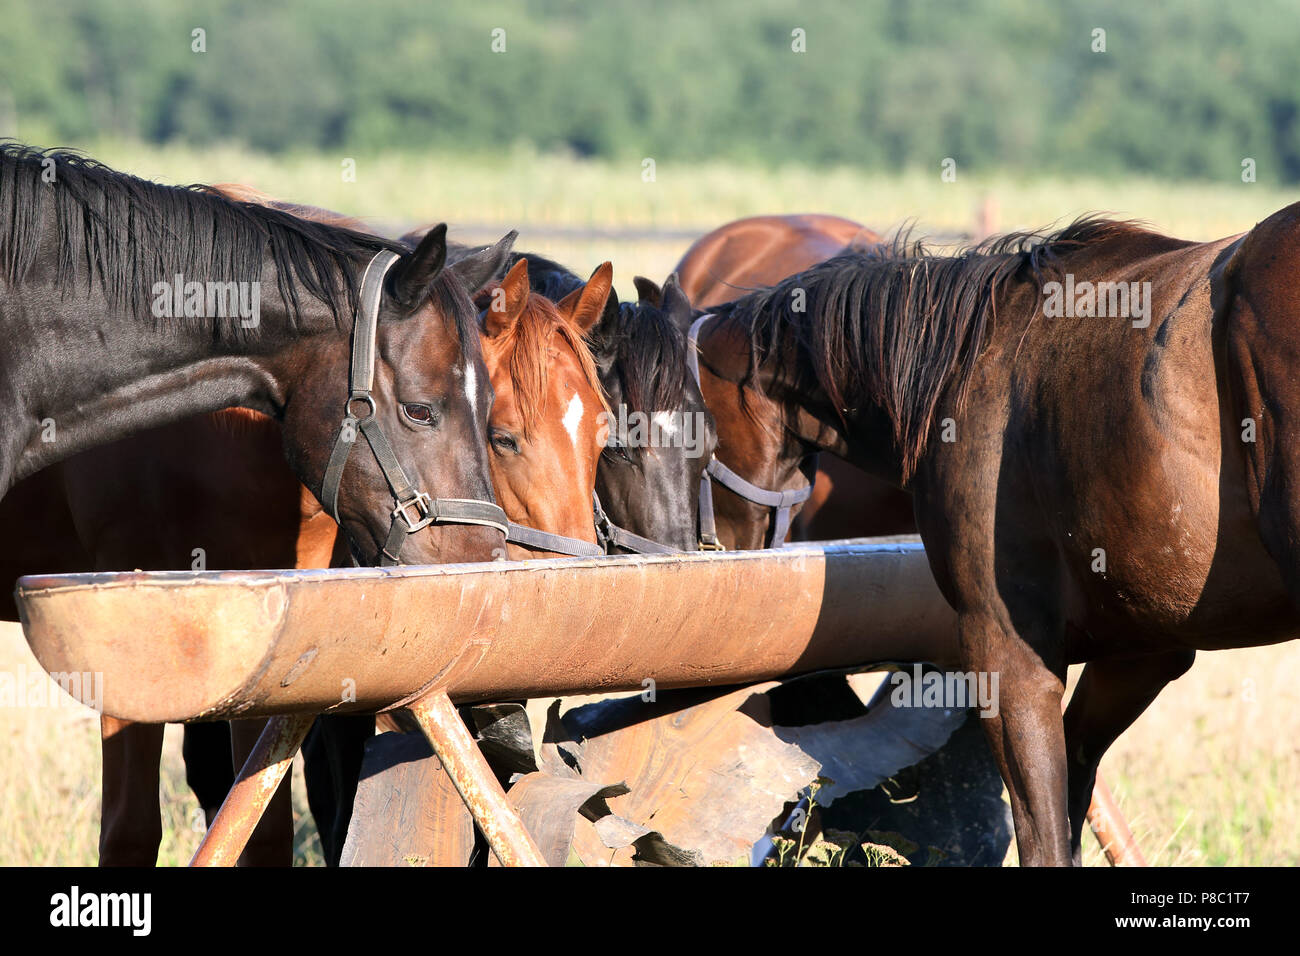 Gestuet Westerberg, les chevaux mangent dans le pâturage d'une mangeoire Banque D'Images